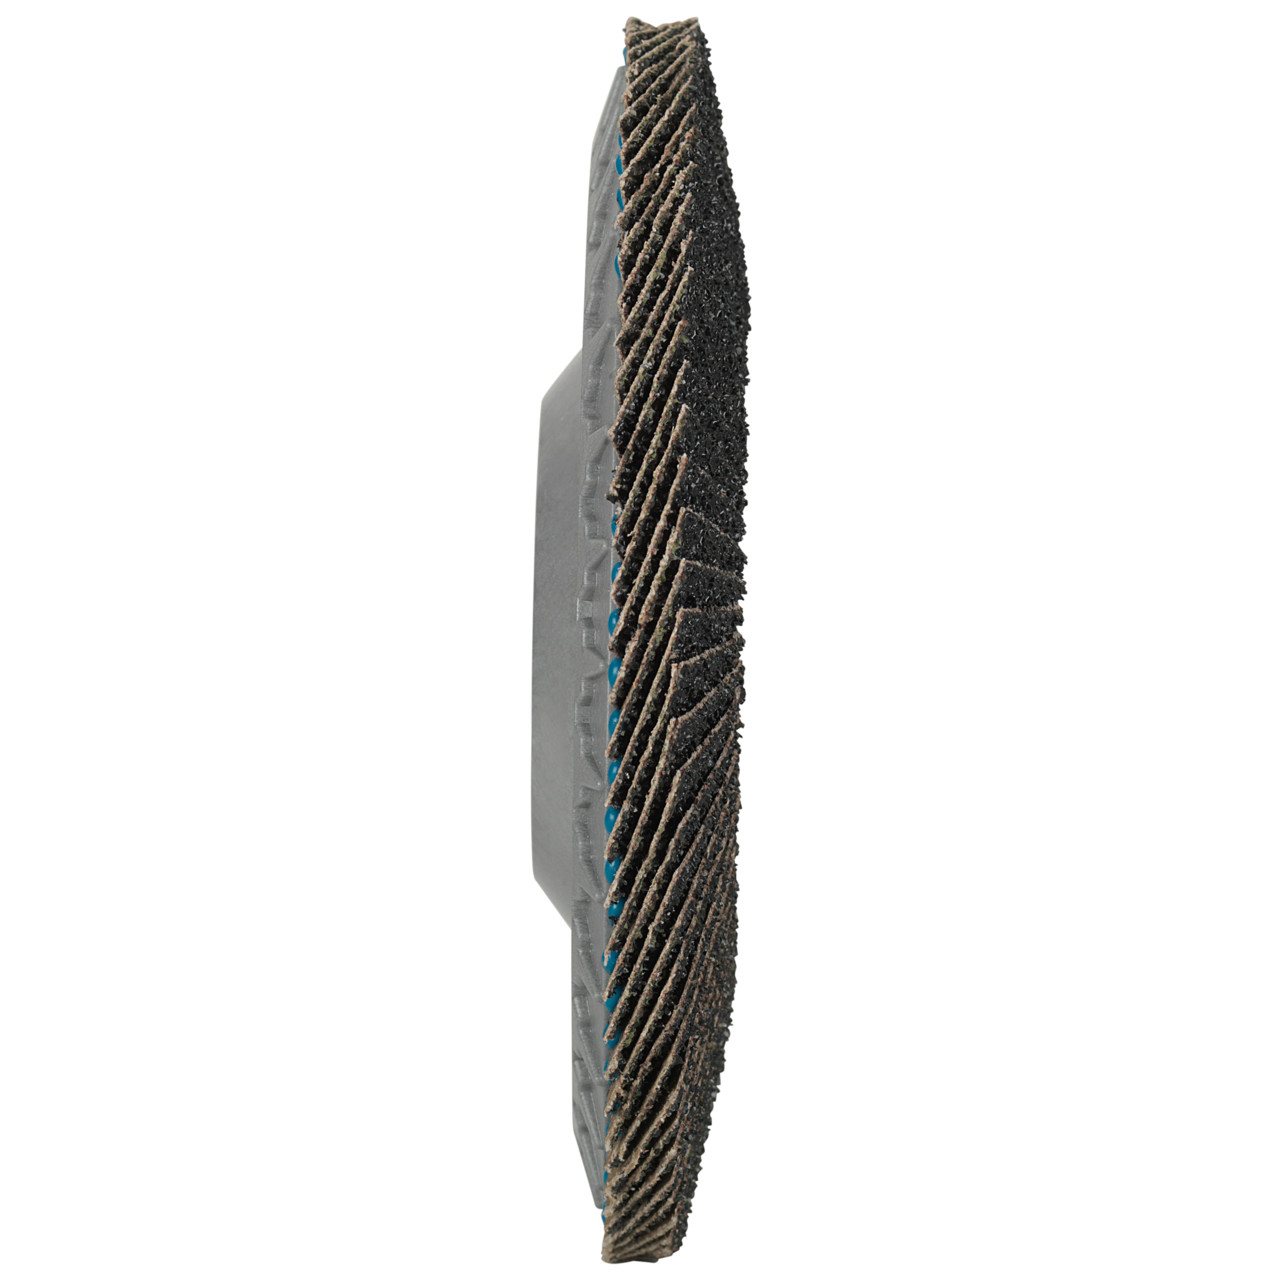 Tyrolit Arandela de seguridad dentada DxH 178x22,23 LONGLIFE C-TRIM para acero y acero inoxidable, P120, forma: 28N - versión recta (cuerpo portador de plástico), Art. 34239222